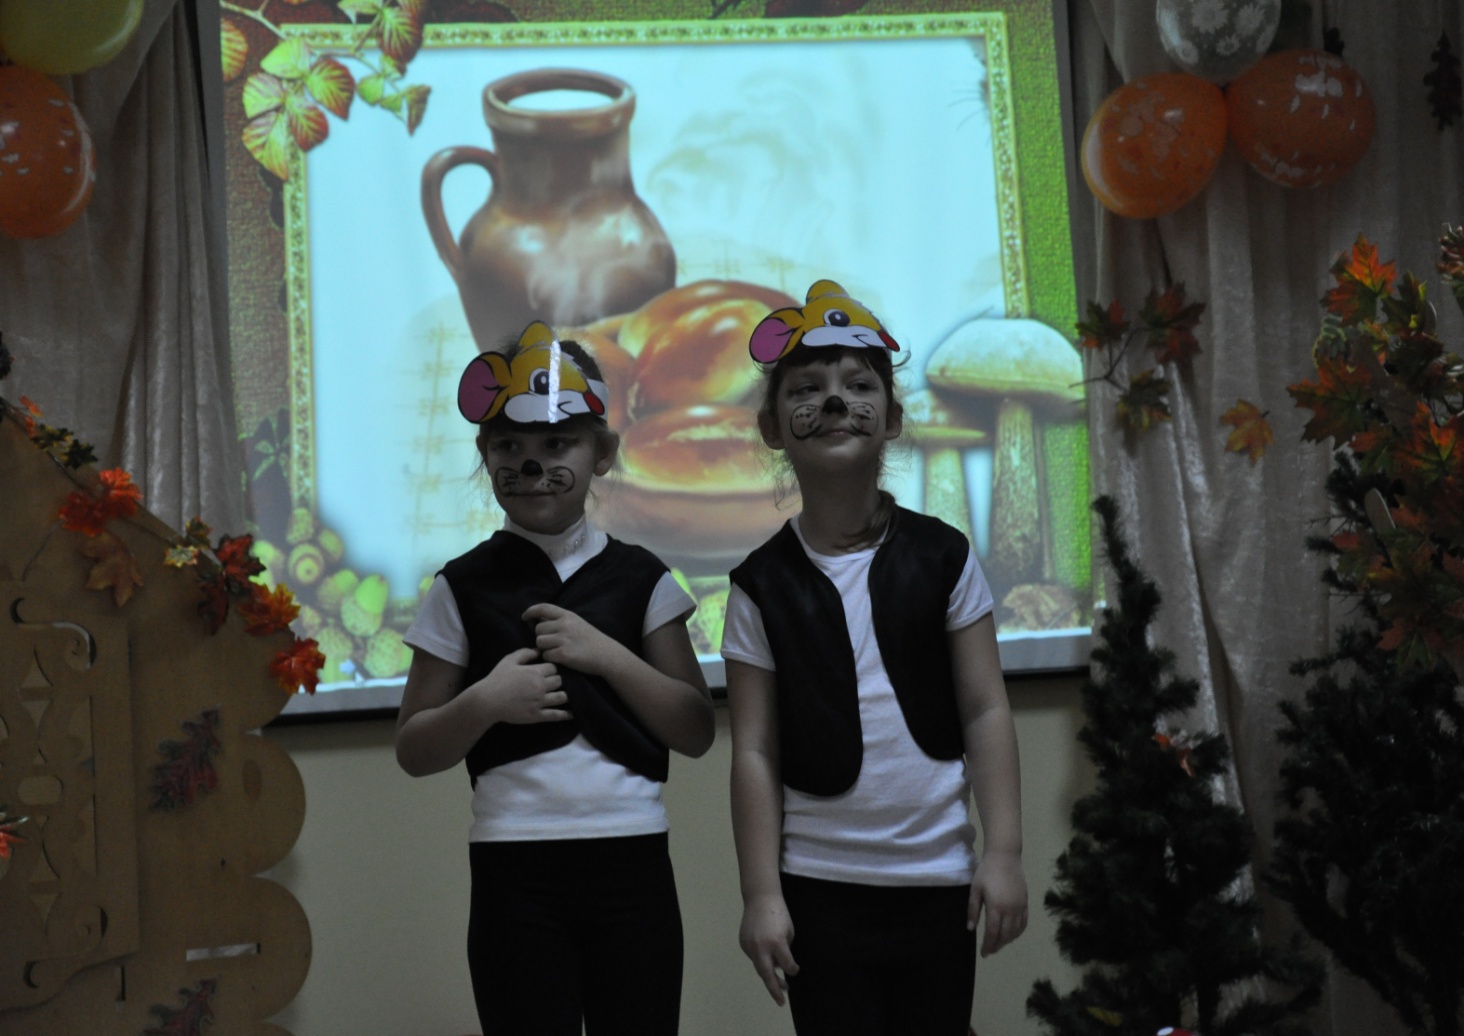 Театрализованая деятельность детей подготовительной группы Осенний колосок